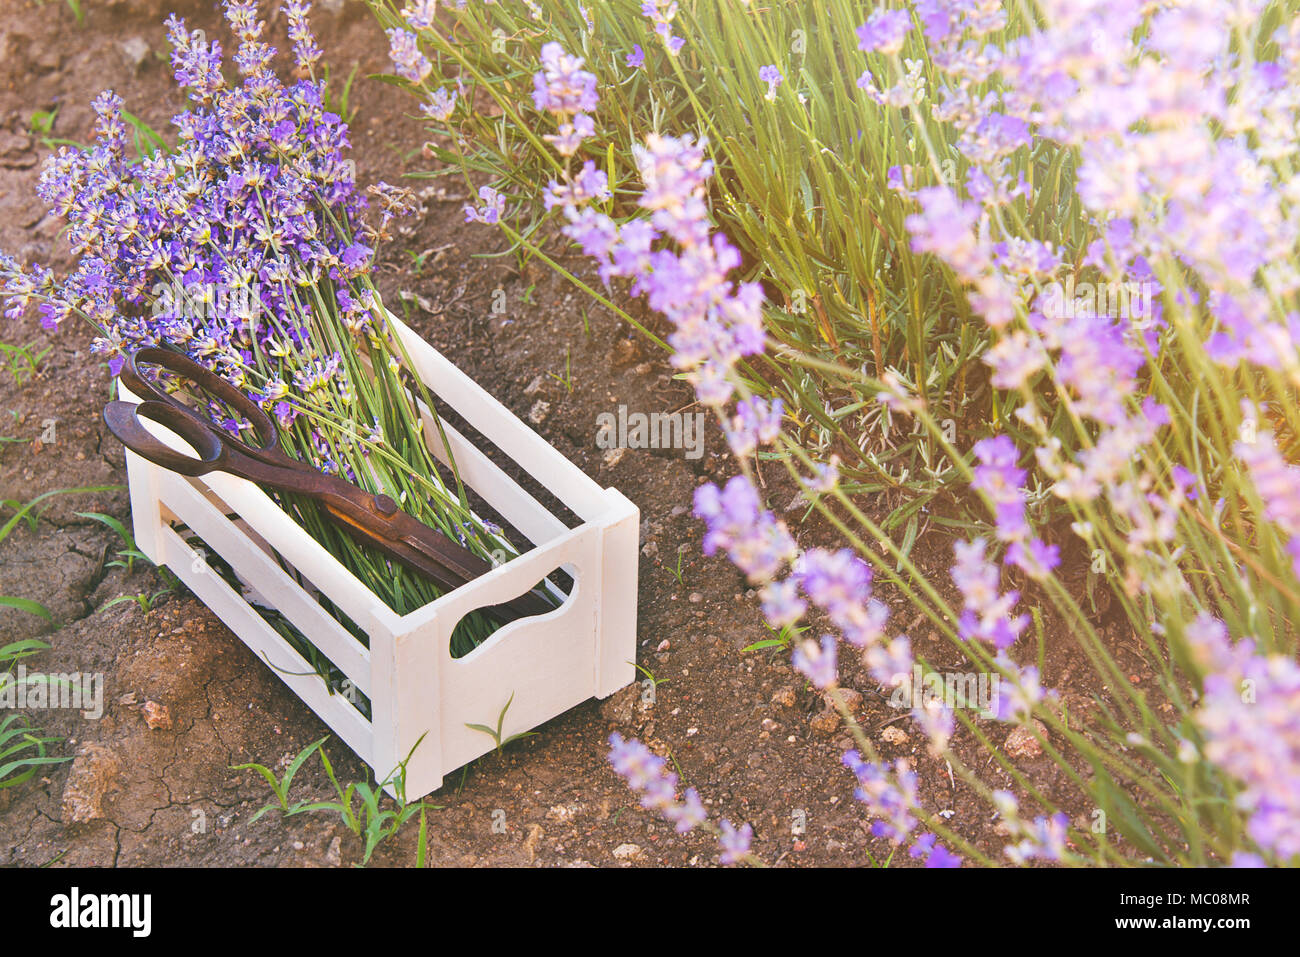 Ein Bündel von frisch geschnittenem Lavendel Blumen und rostigen Schere in einem kleinen weißen Holzkiste über den Boden unter den blühenden Lavendelsträuchern gelegt. Stockfoto